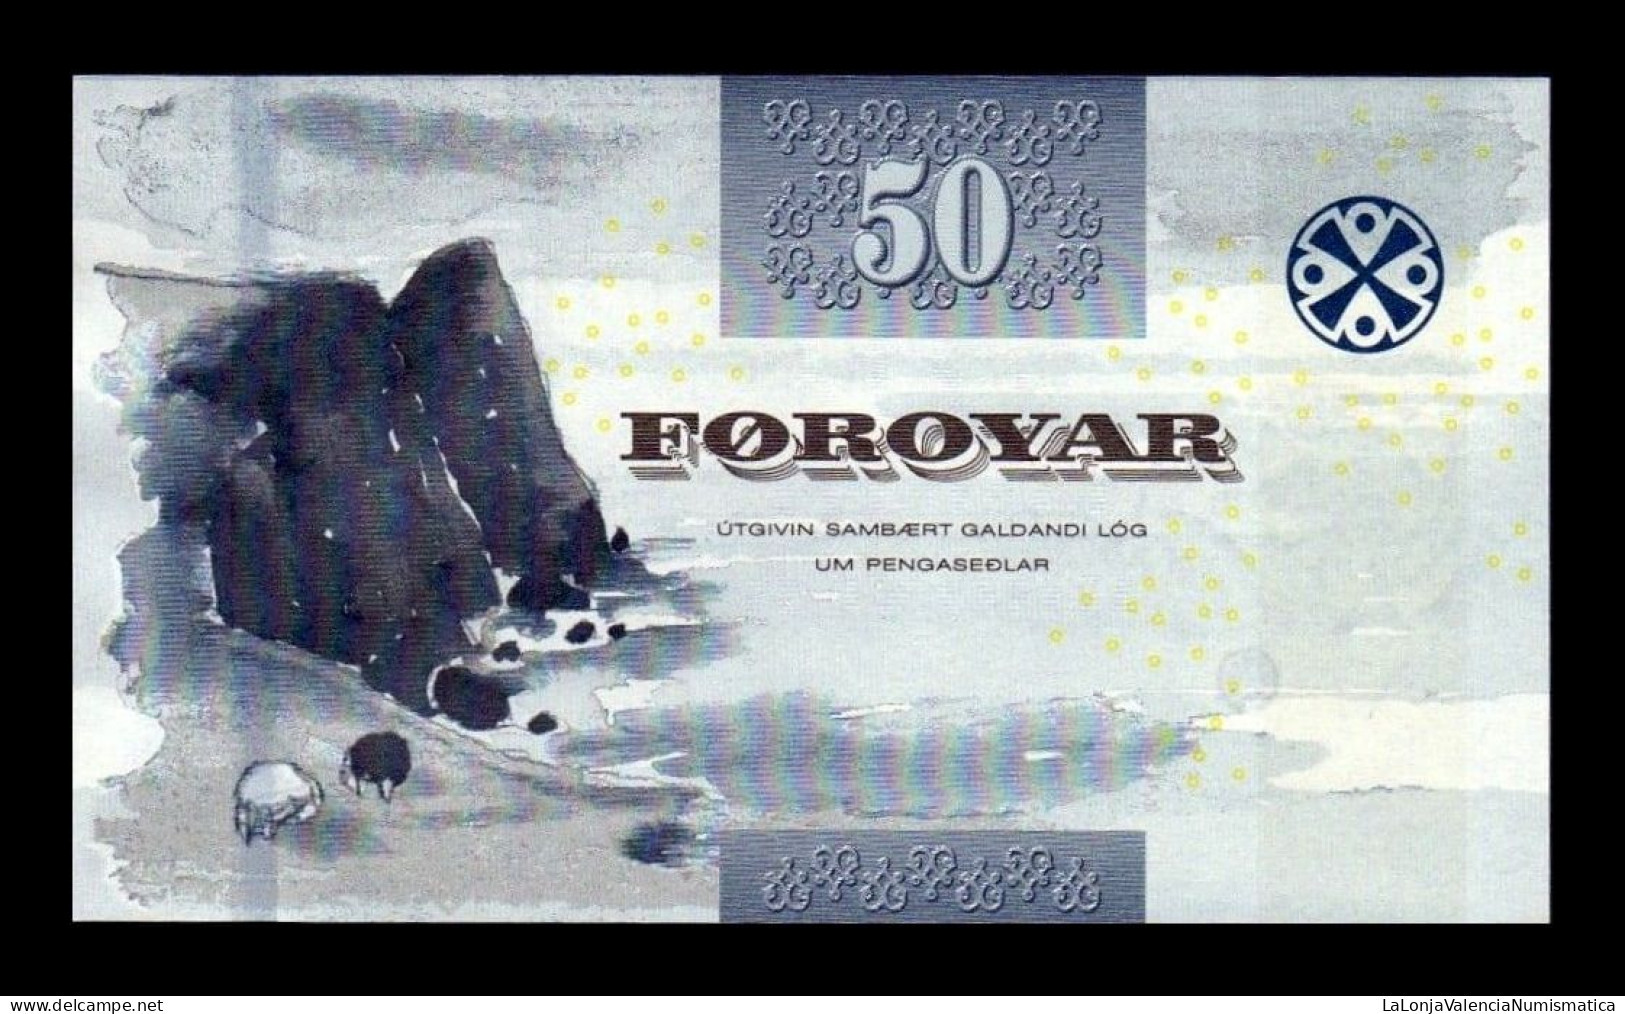 Islas Feroe Faeroe Islands 50 Kronur 2011 Pick 29 Sc Unc - Färöer Inseln